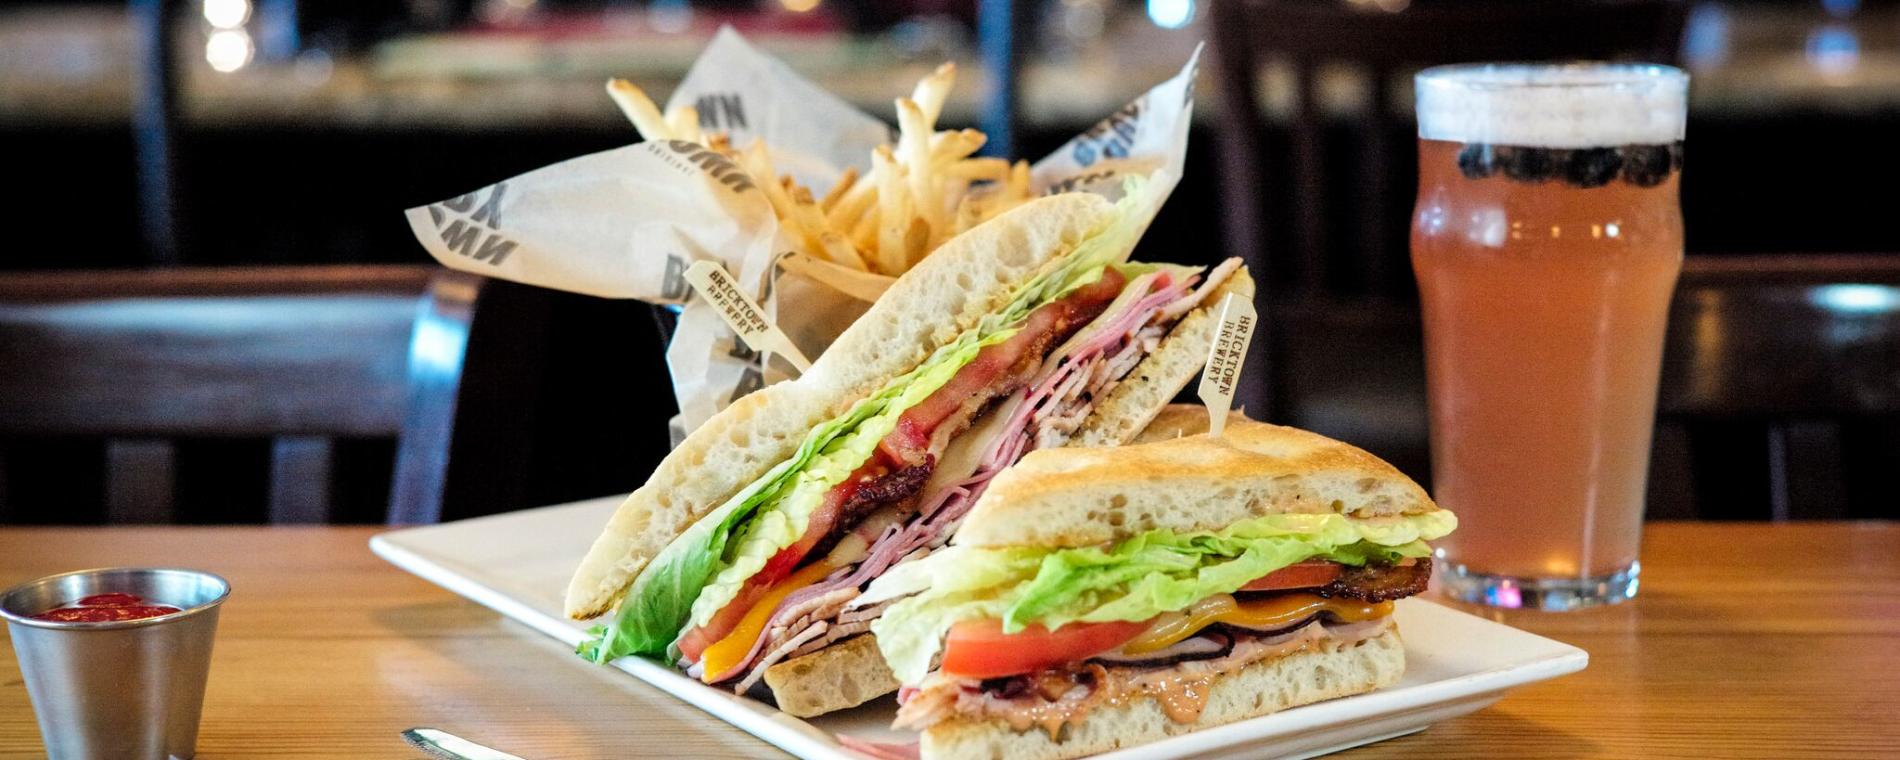 BTown West club sandwich Visit Wichita